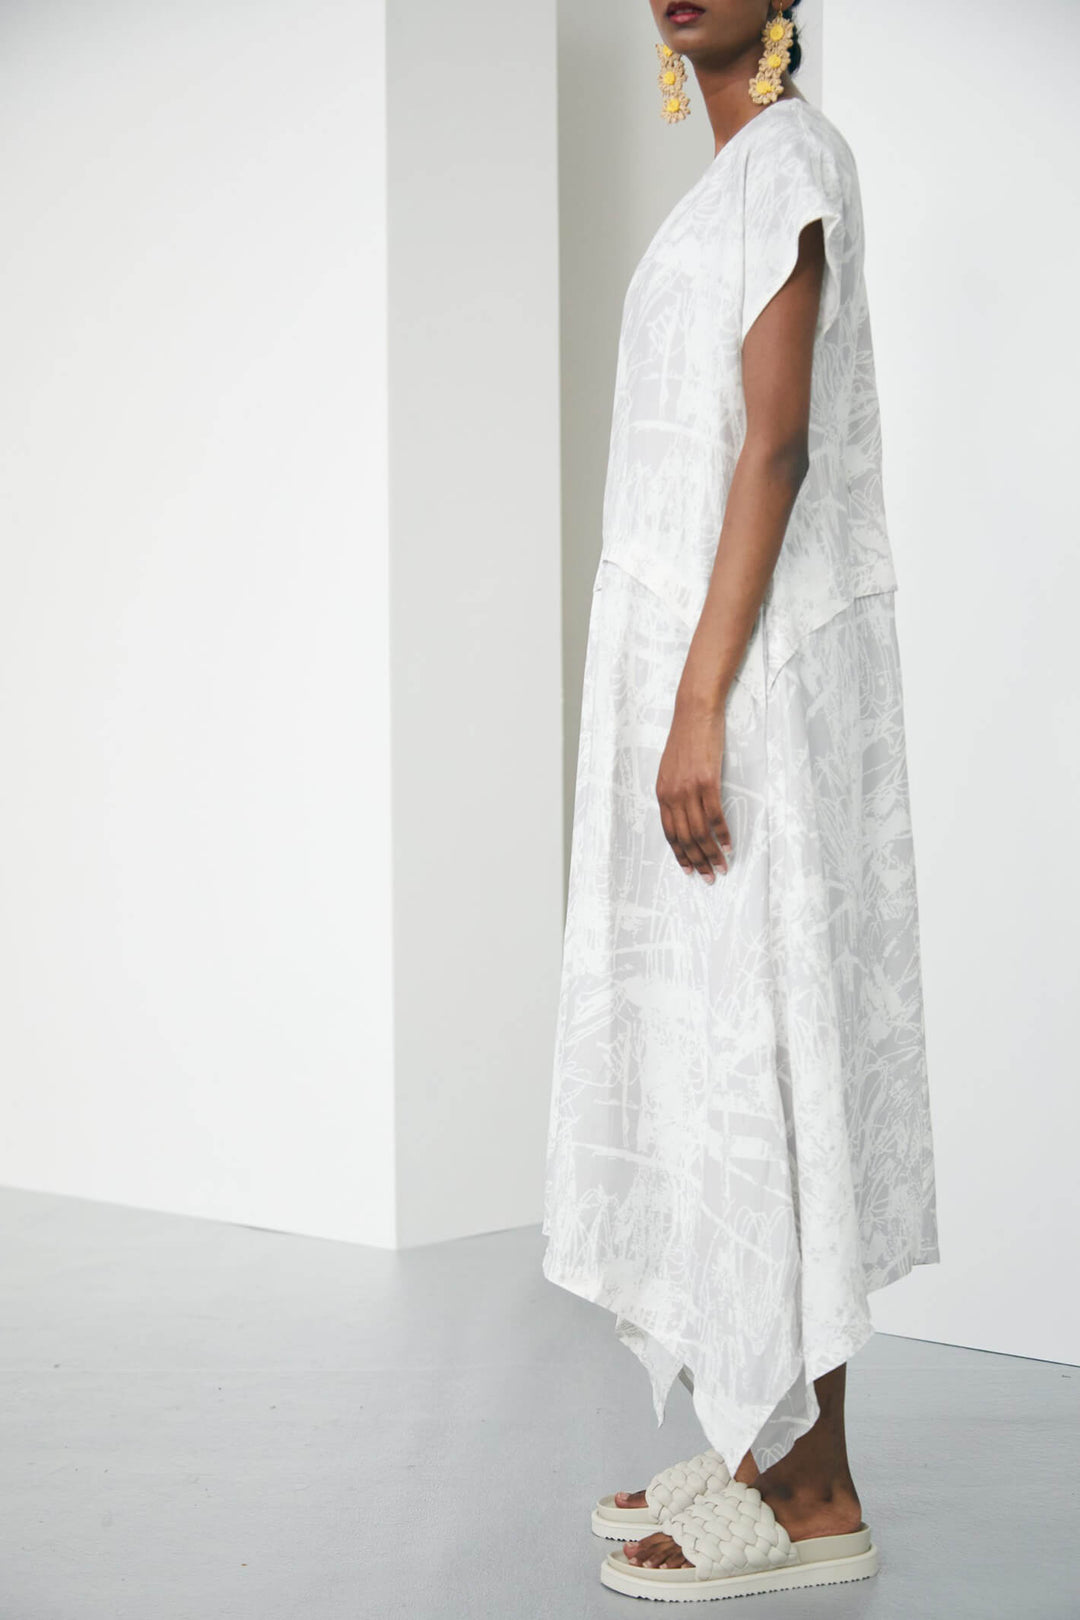 Naya NAS23 250 Stone & White Print Dress